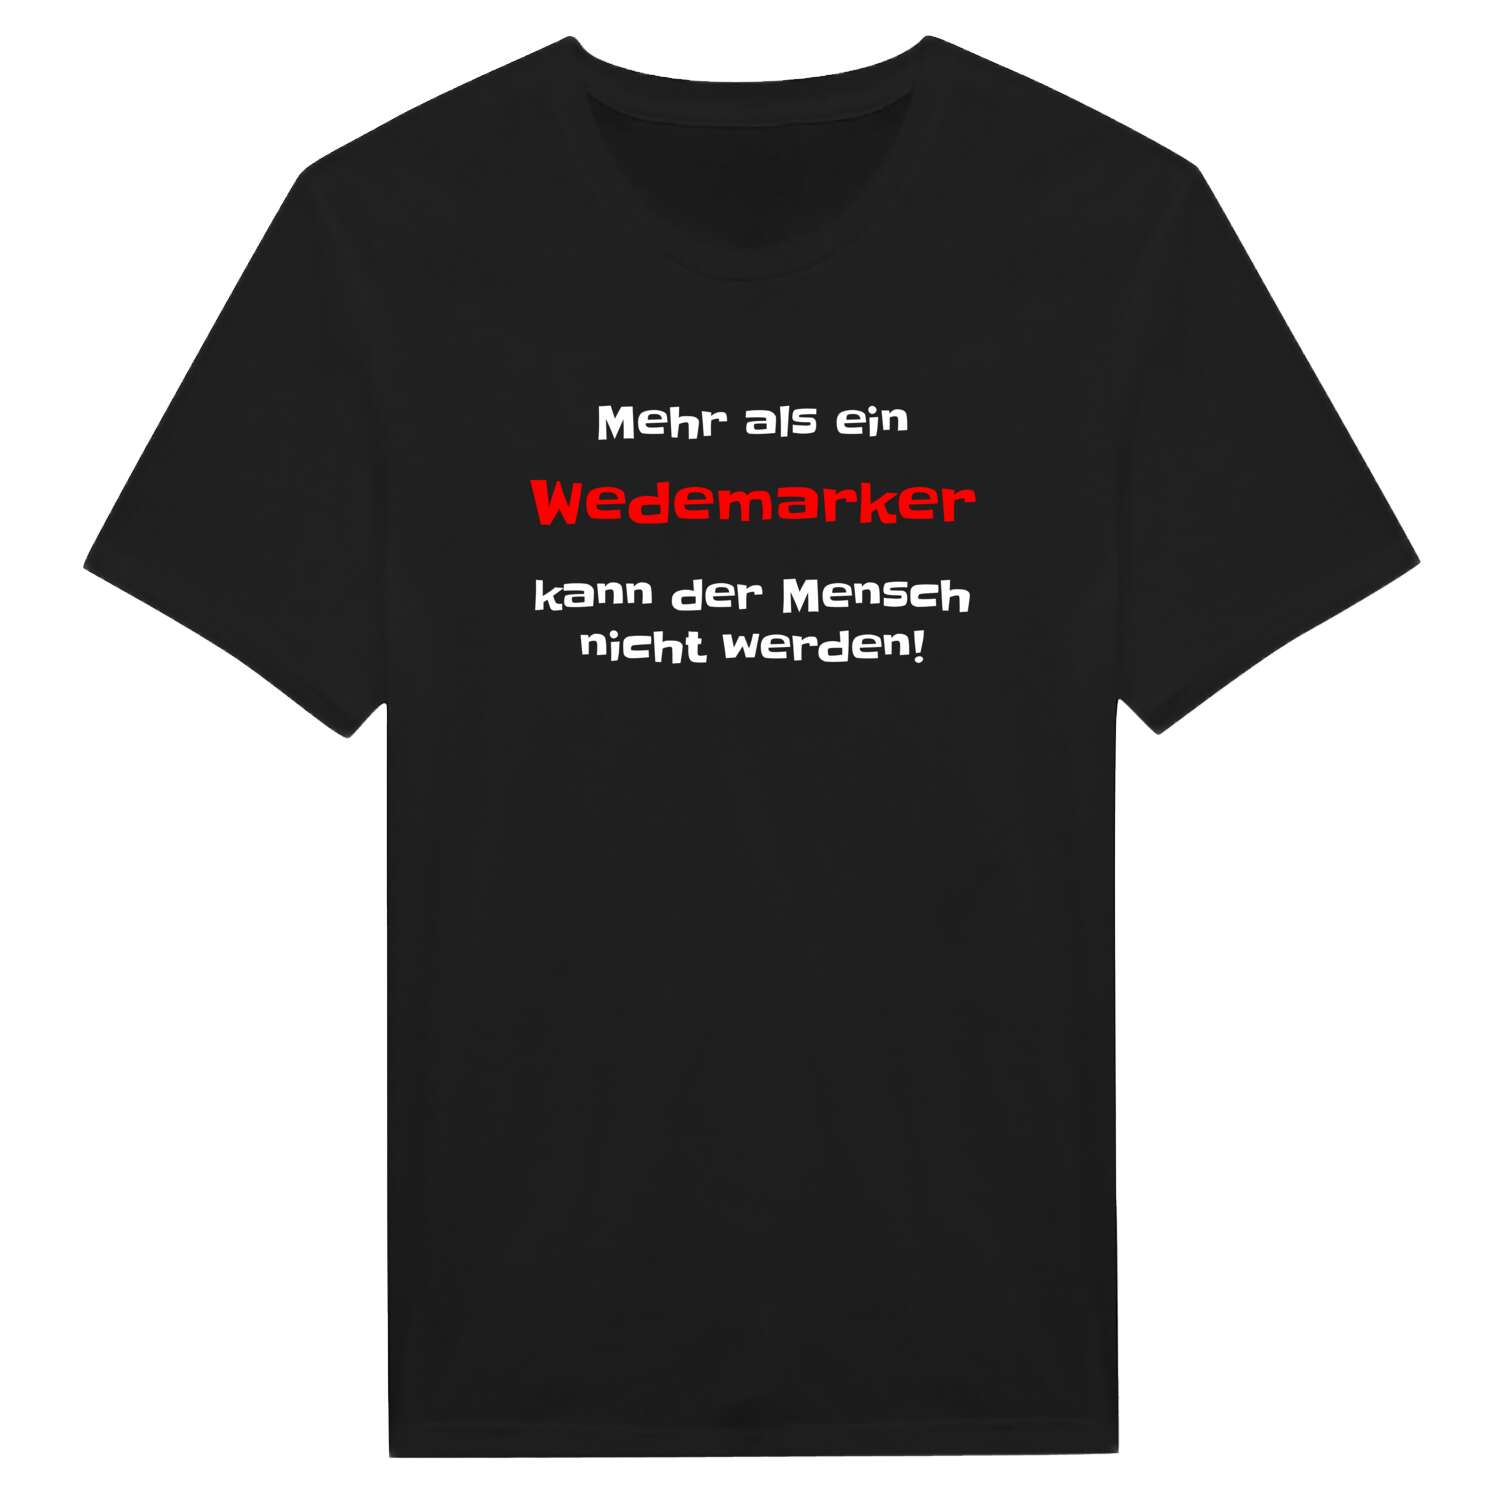 Wedemark T-Shirt »Mehr als ein«